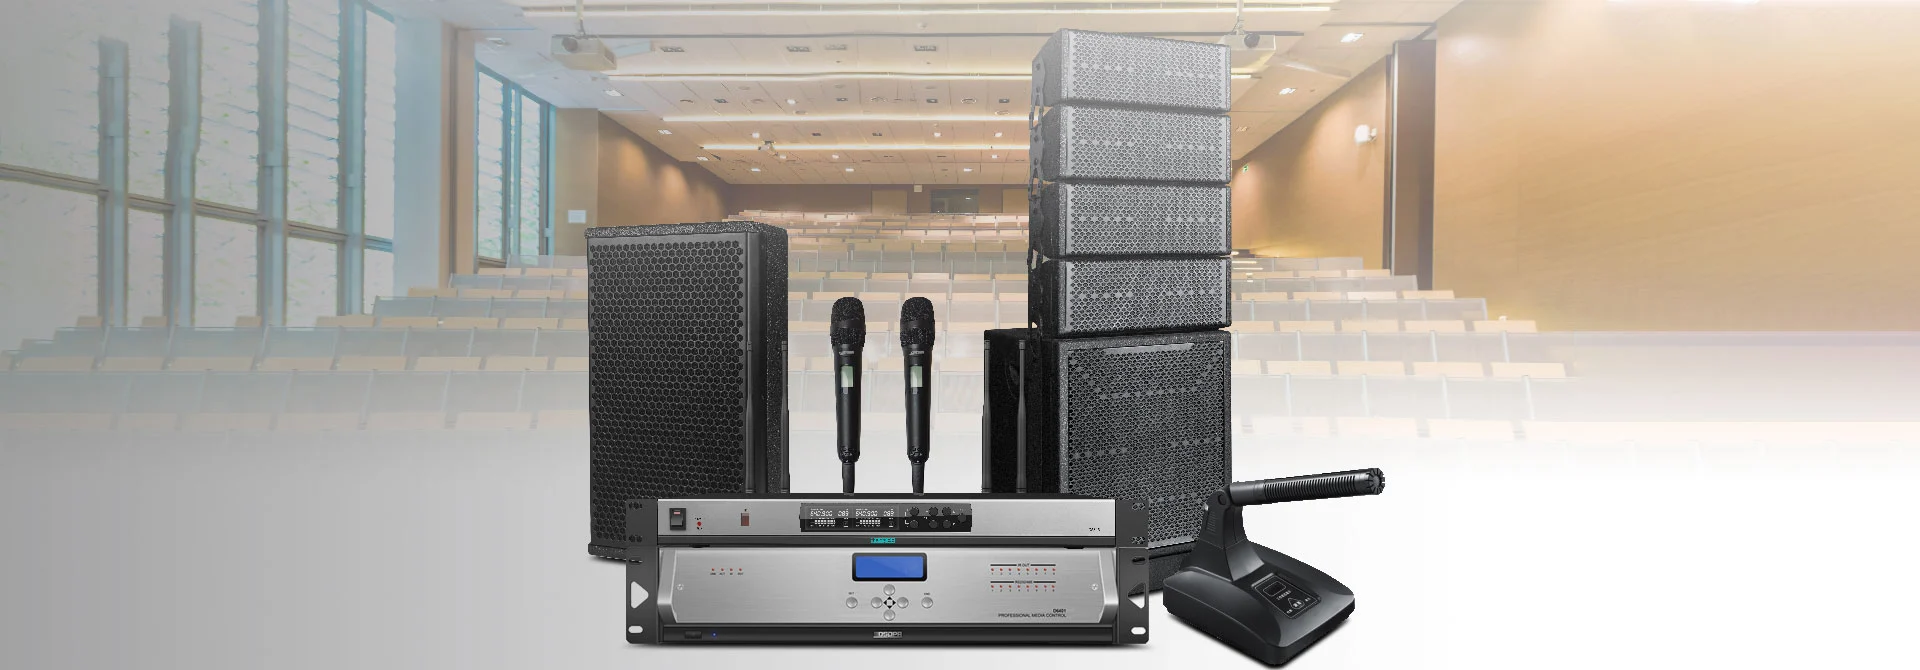 Sistema de sonido Pro para salas de conferencias grandes